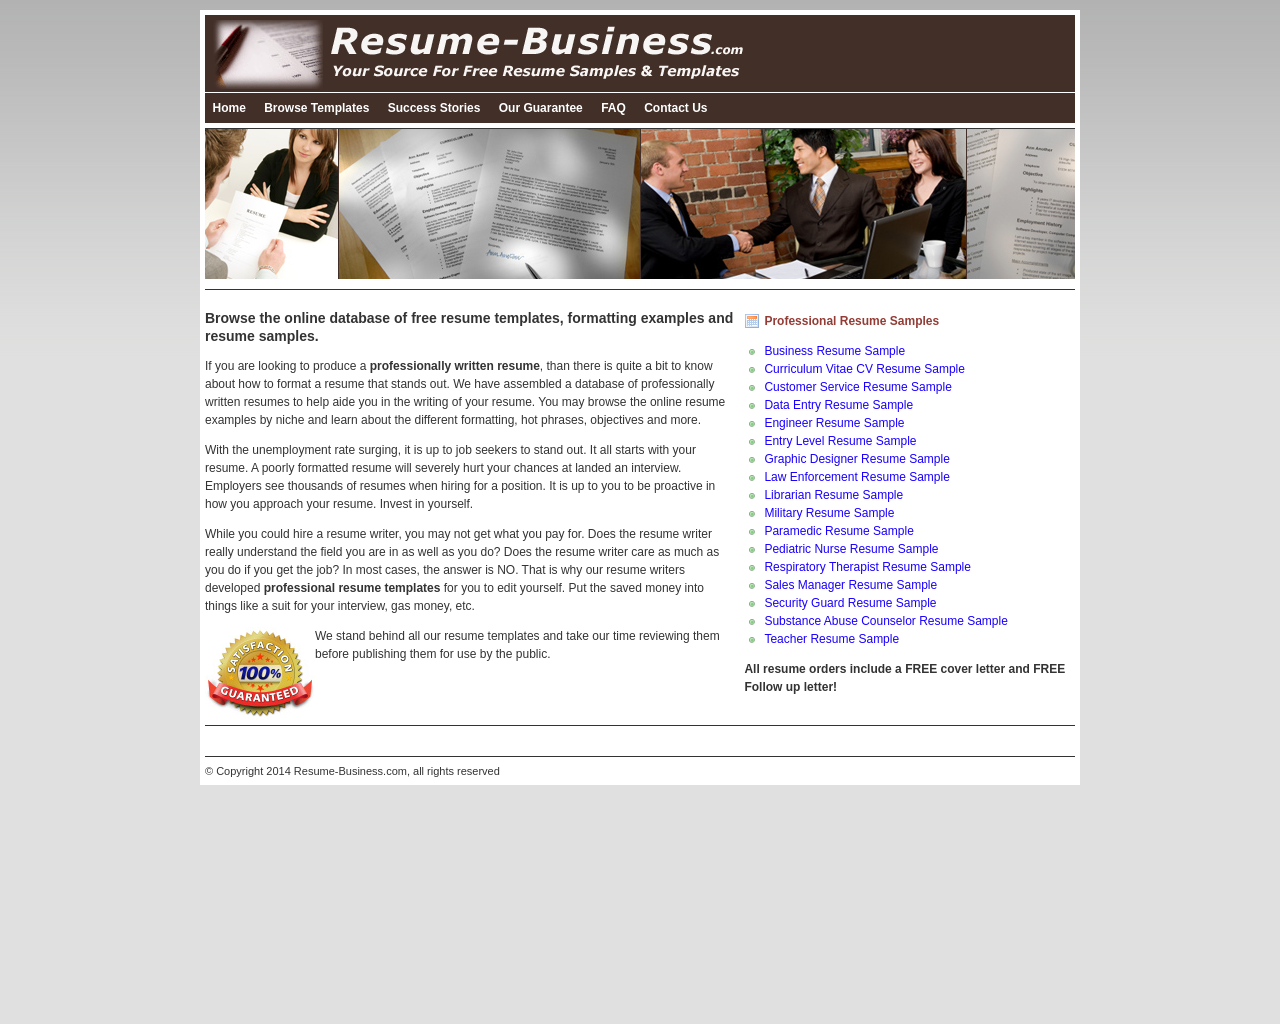 resume-business.com